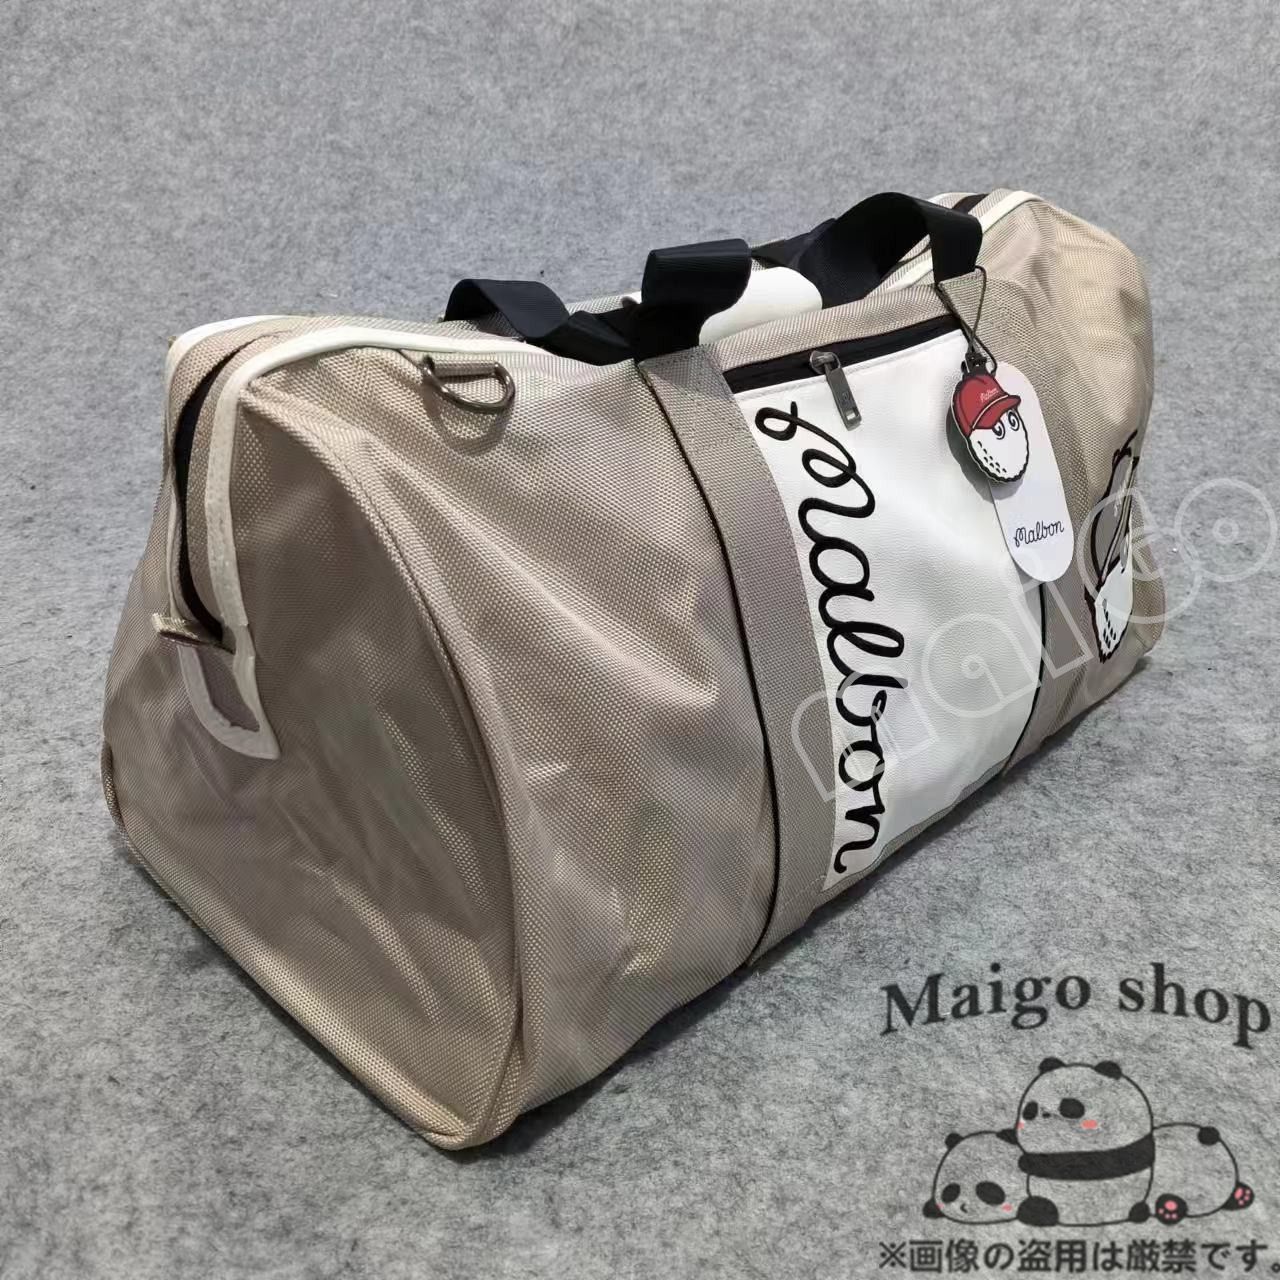 即購入大歓迎 malbon golf マルボンゴルフ ボストンバッグ 旅行用バッグ キャディバッグ ゴルフバッグ 大容量 ハンドバッグ 耐摩耗性  ベージュ - メルカリ